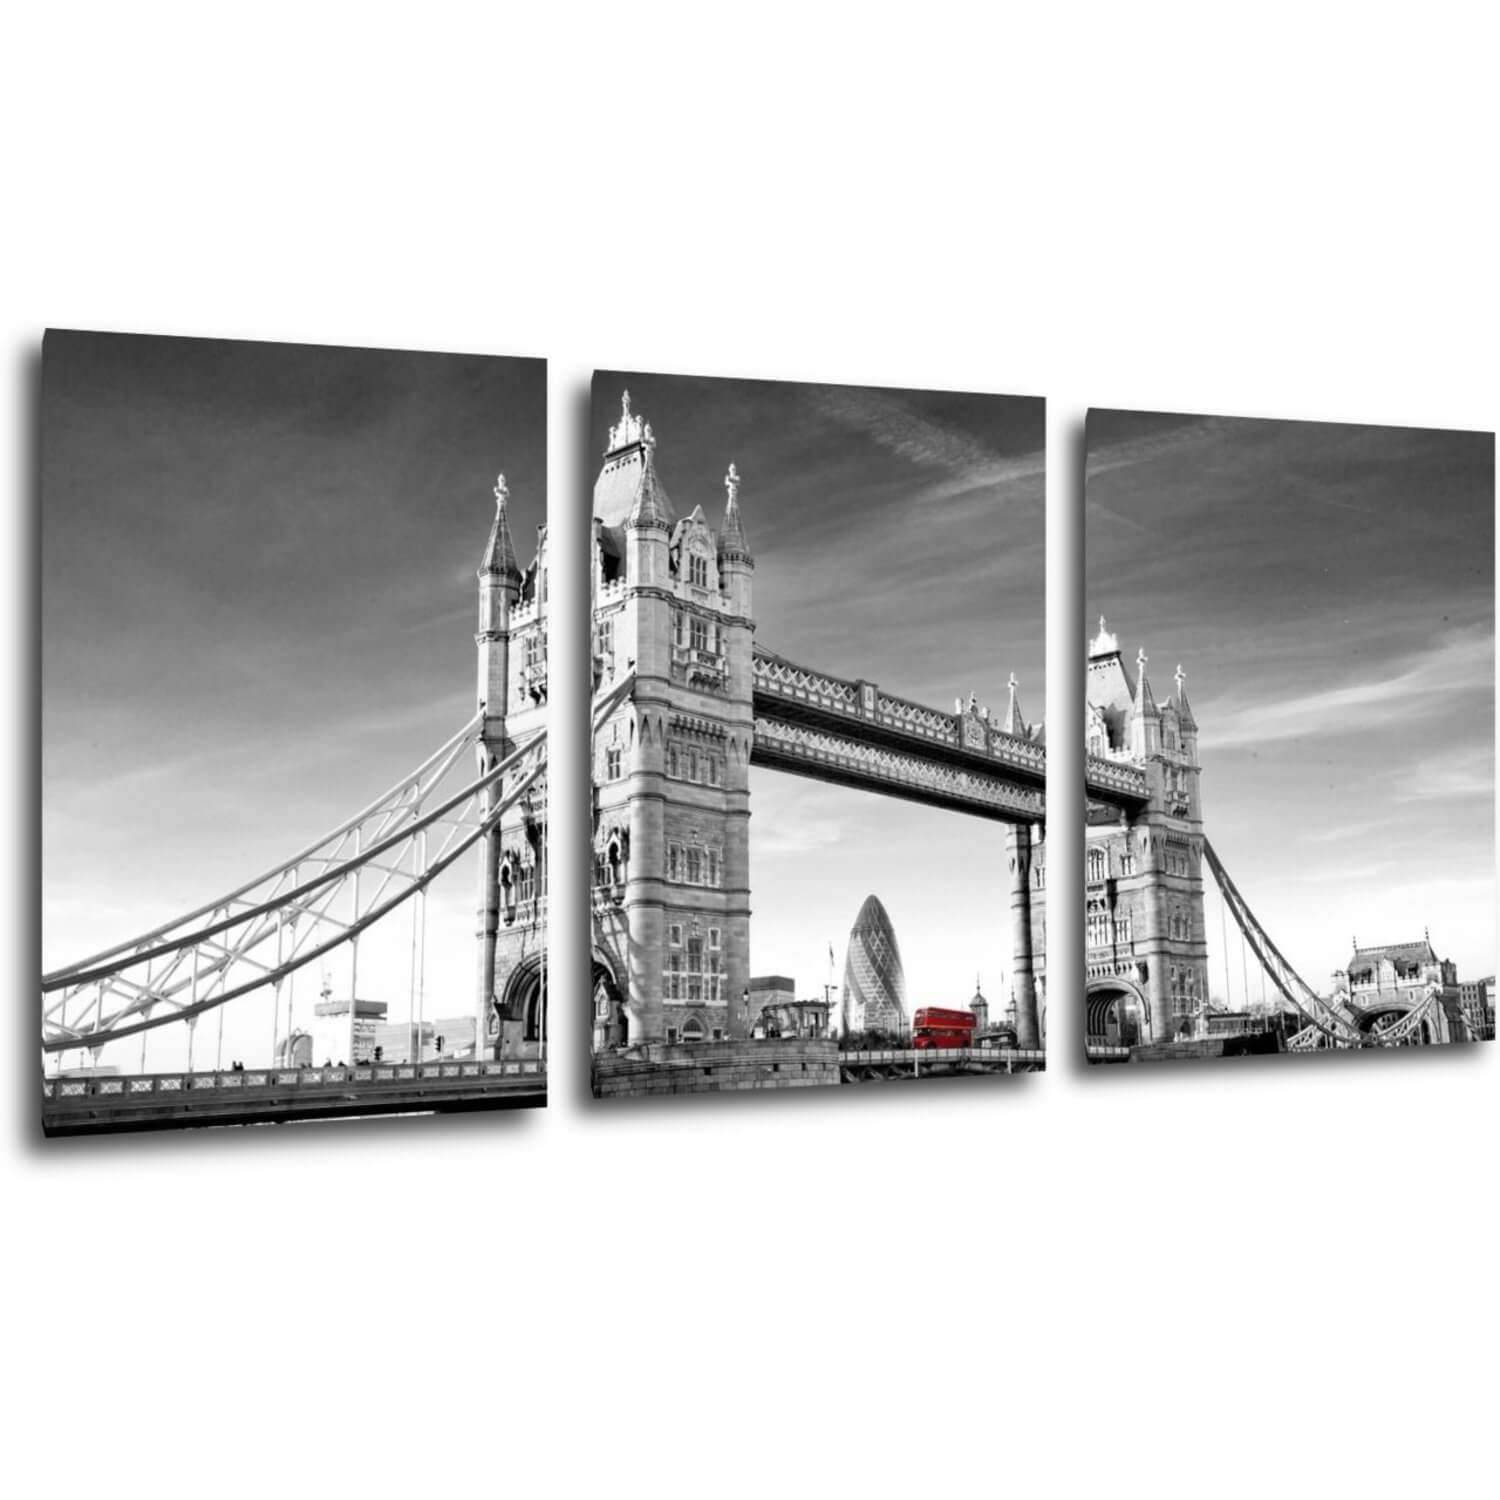 Obraz Tower Bridge černobílý - 150 x 70 cm (3 dílný)